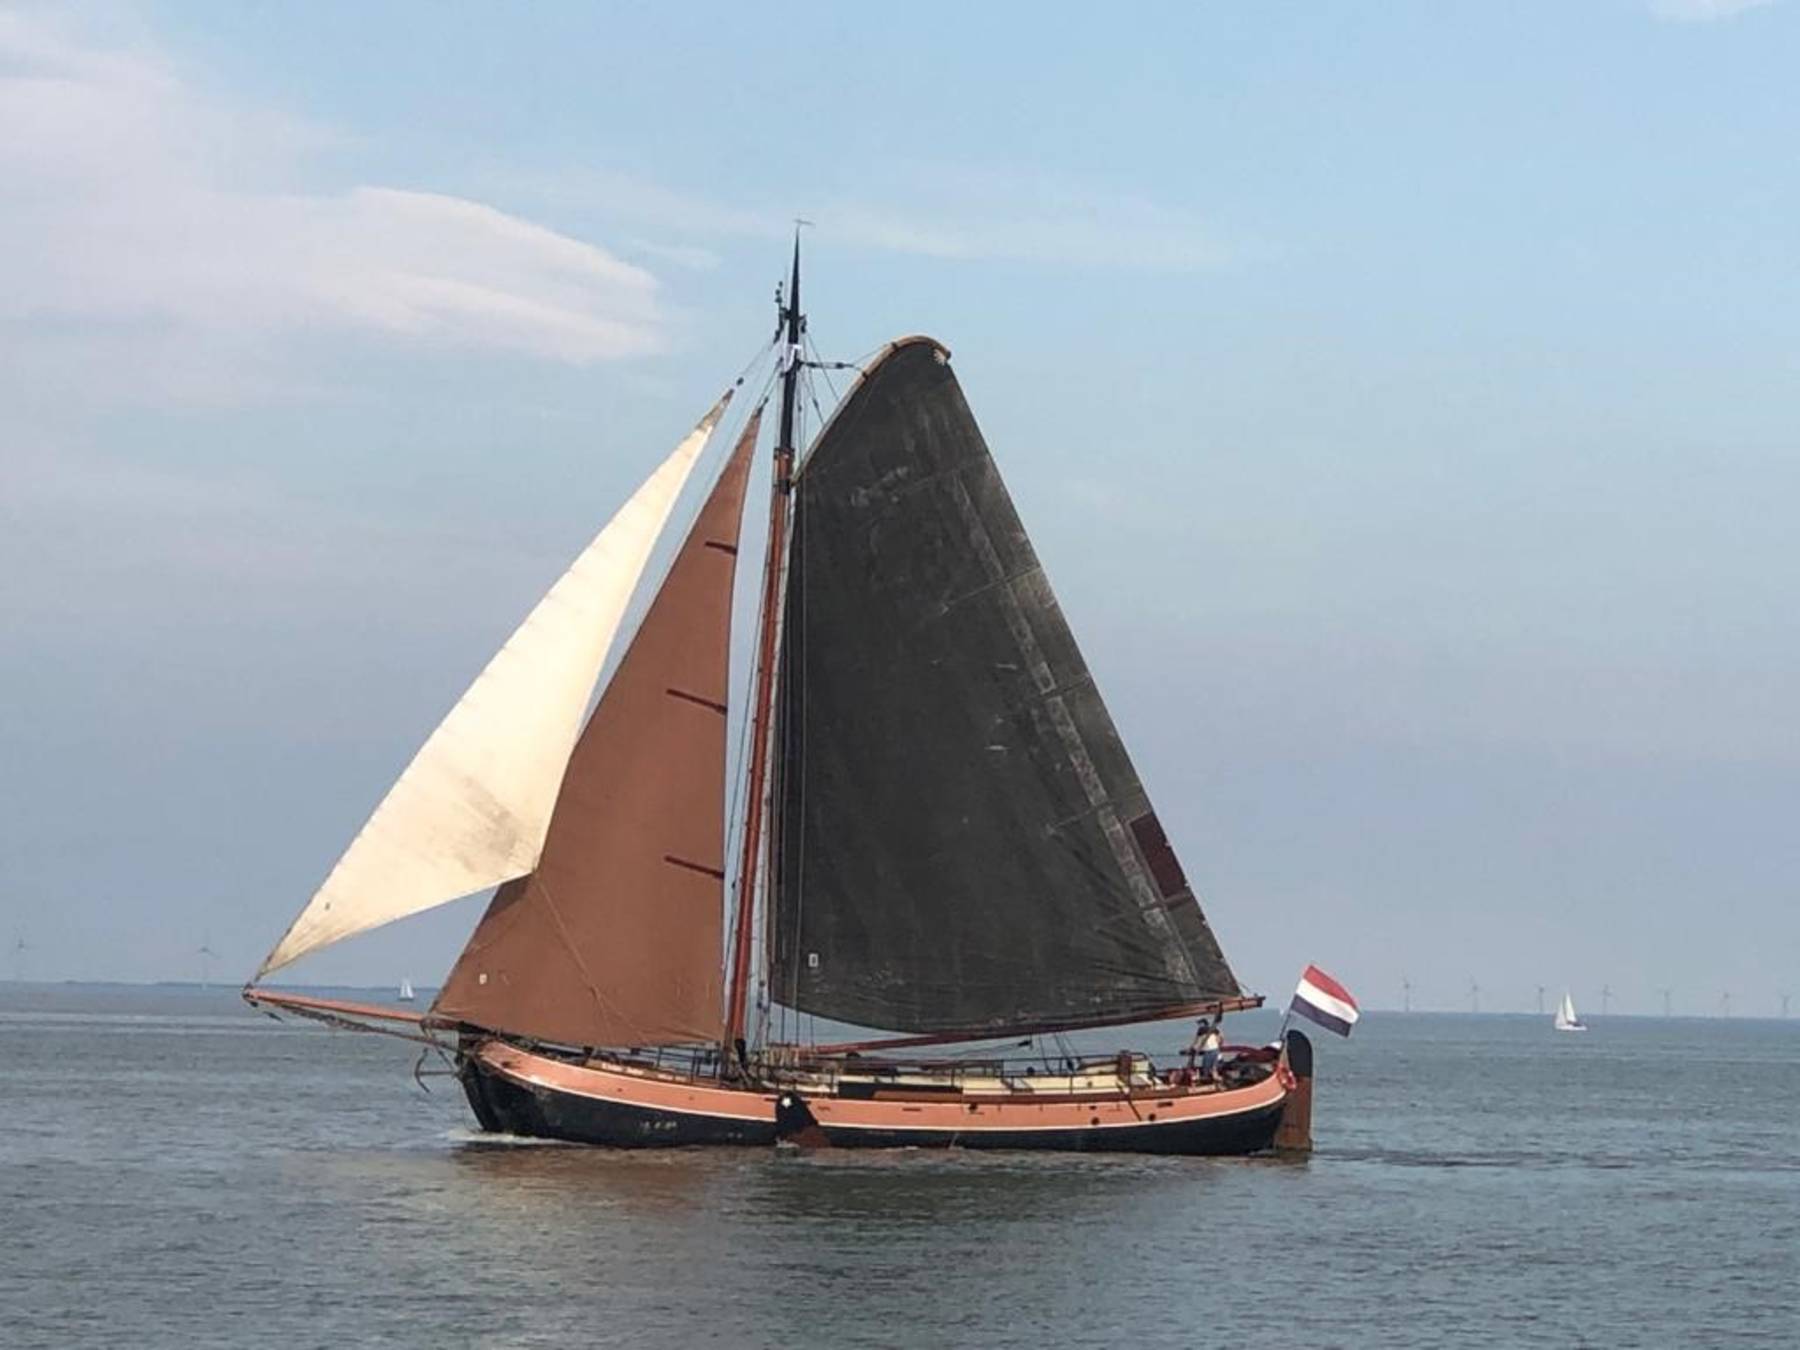 Am Fronleichnamwochenende mit der Kleine Jager ab Enkhuizen auf dem IJsselmeer und Watenmeer segeln